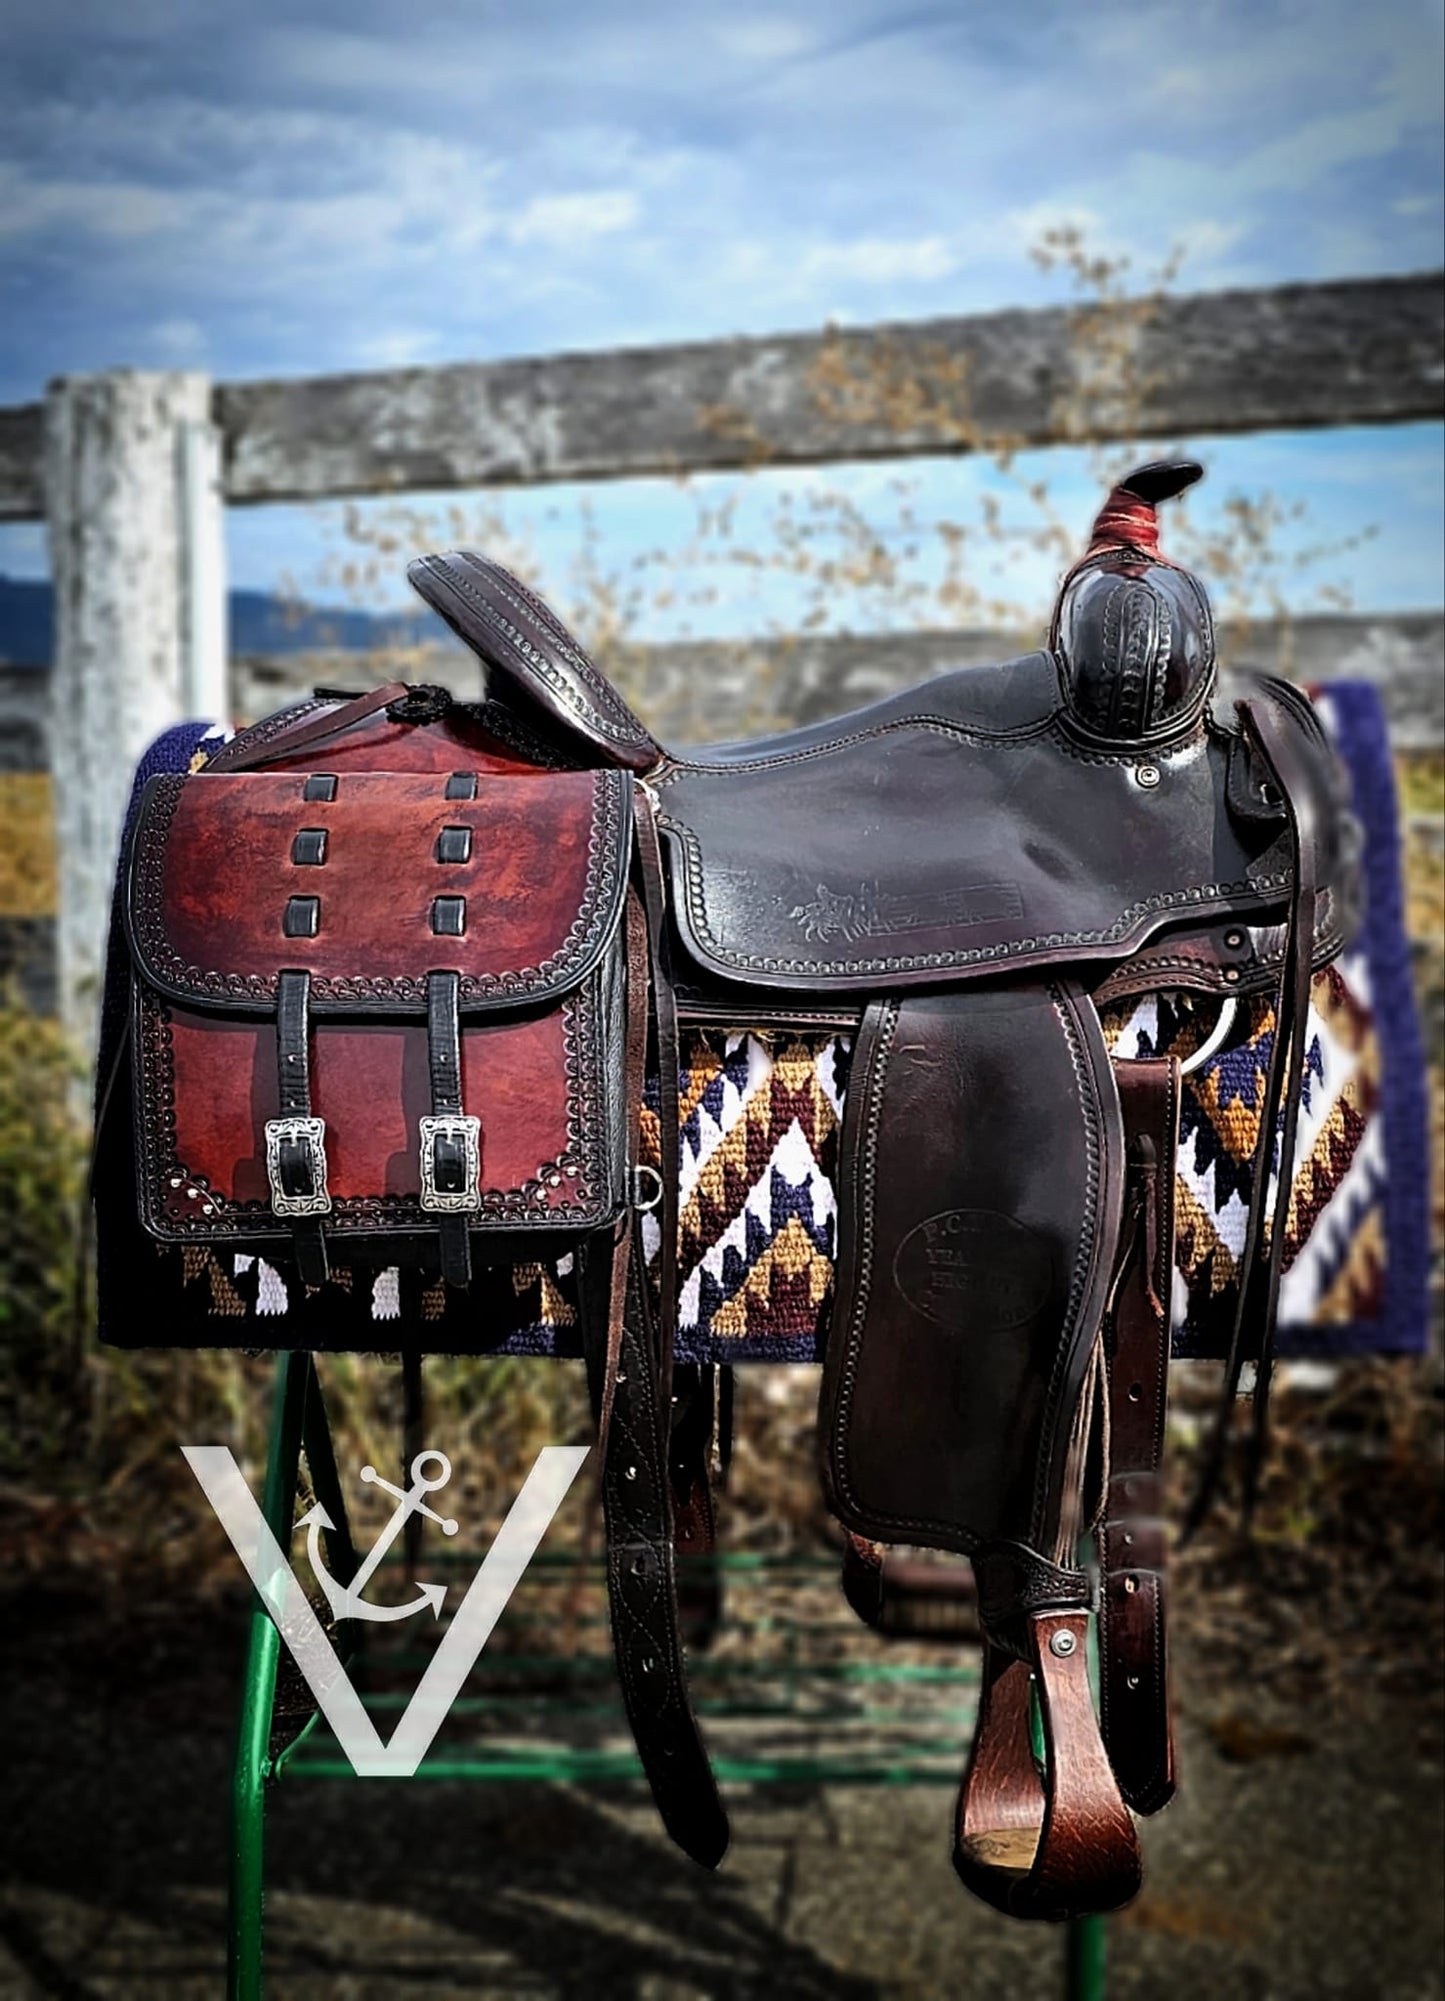 XL saddle bags